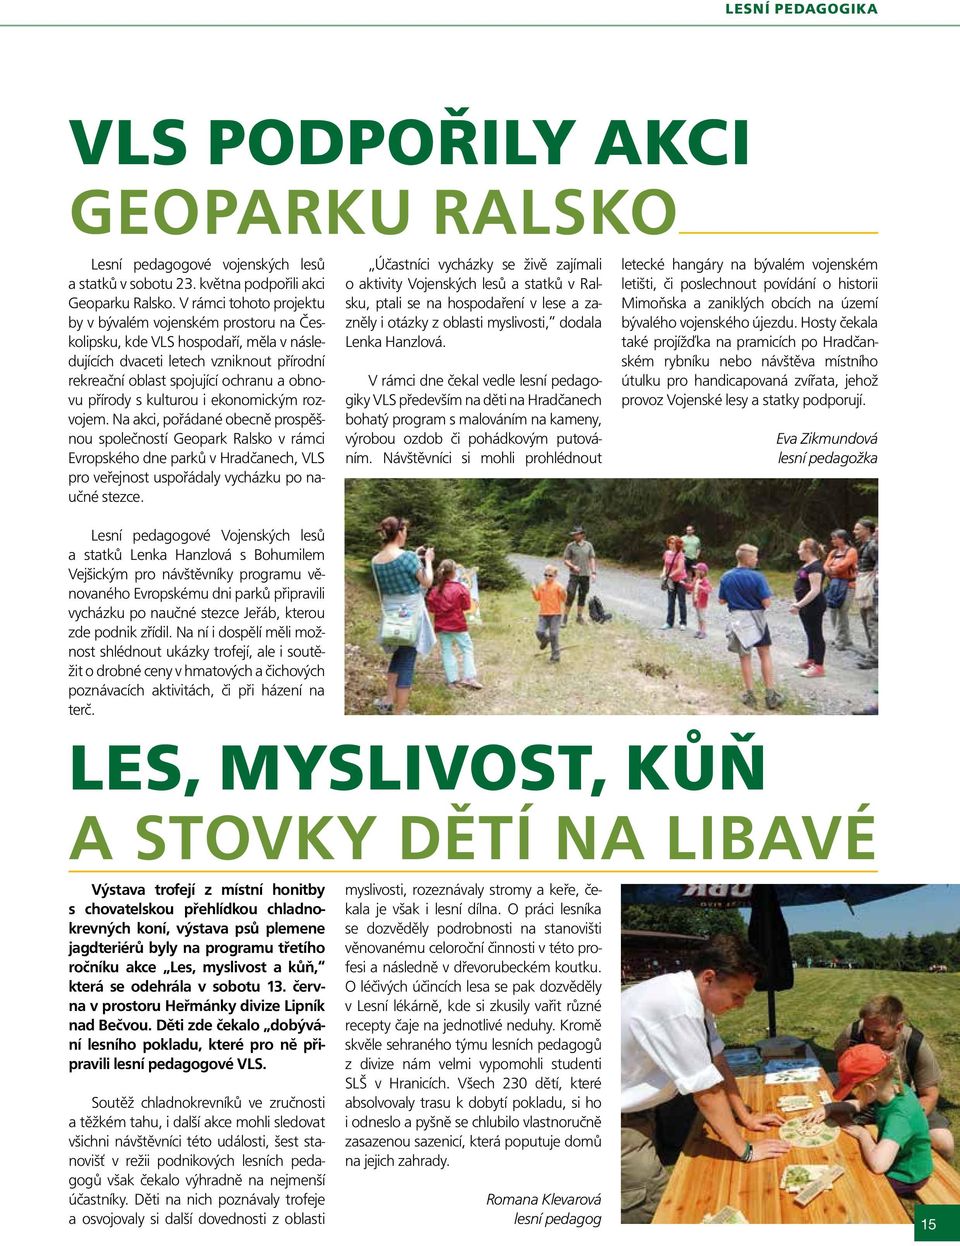 kulturou i ekonomickým rozvojem. Na akci, pořádané obecně prospěšnou společností Geopark Ralsko v rámci Evropského dne parků v Hradčanech, VLS pro veřejnost uspořádaly vycházku po naučné stezce.